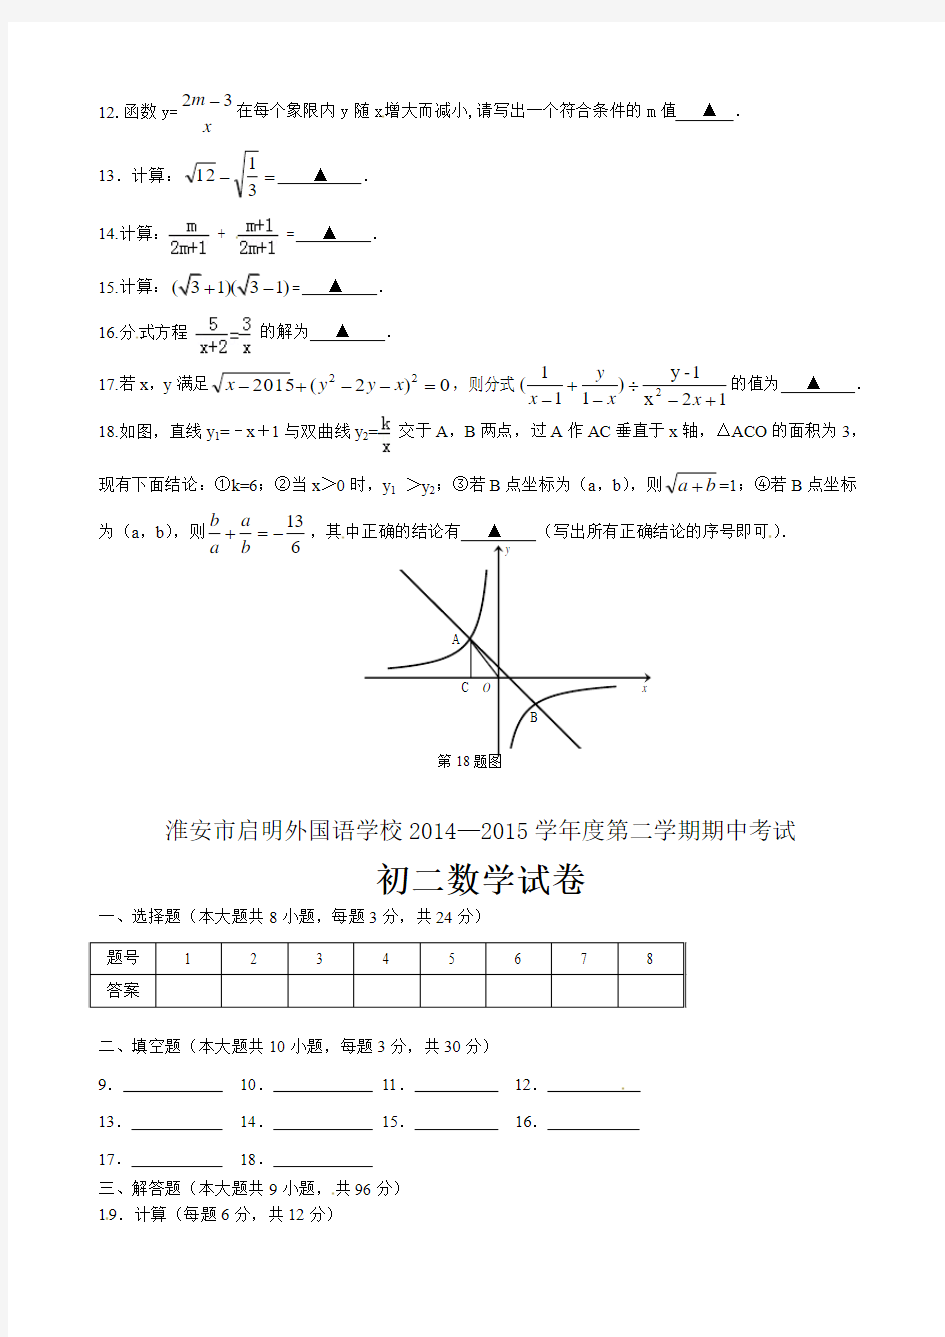 清江中学2014-2015学年八年级下期中考试数学试题及答案